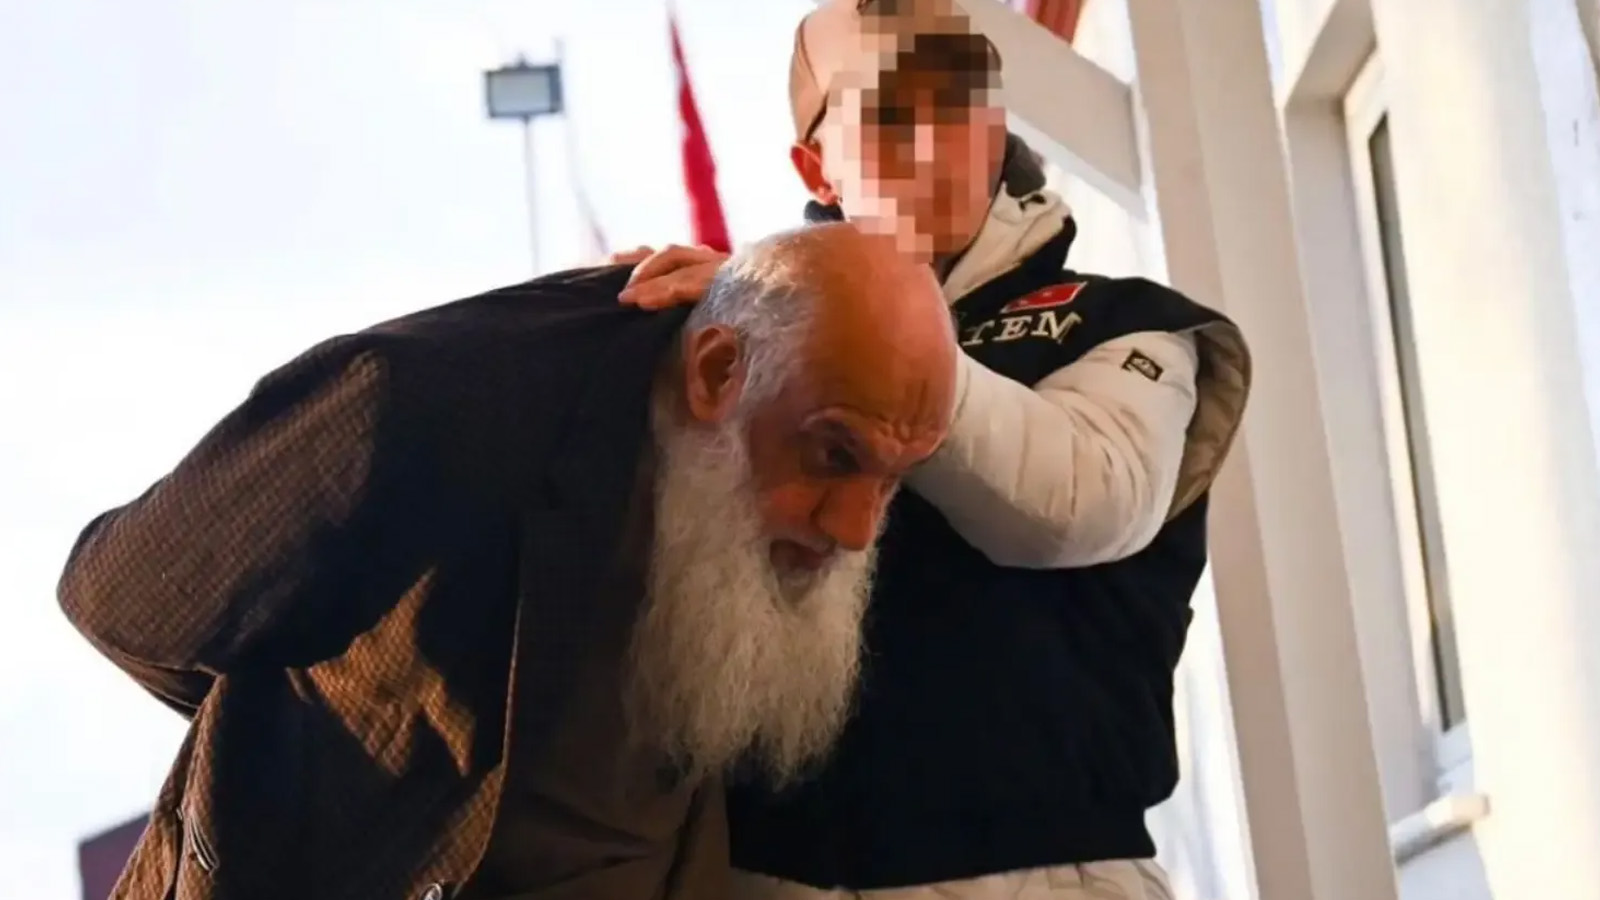 Mossad casuslarından Suriyeli S.T'nin, geçen yıl Hatay Kırıkhan’da camide namaz sonrası vaaz verdiği ortaya çıktı